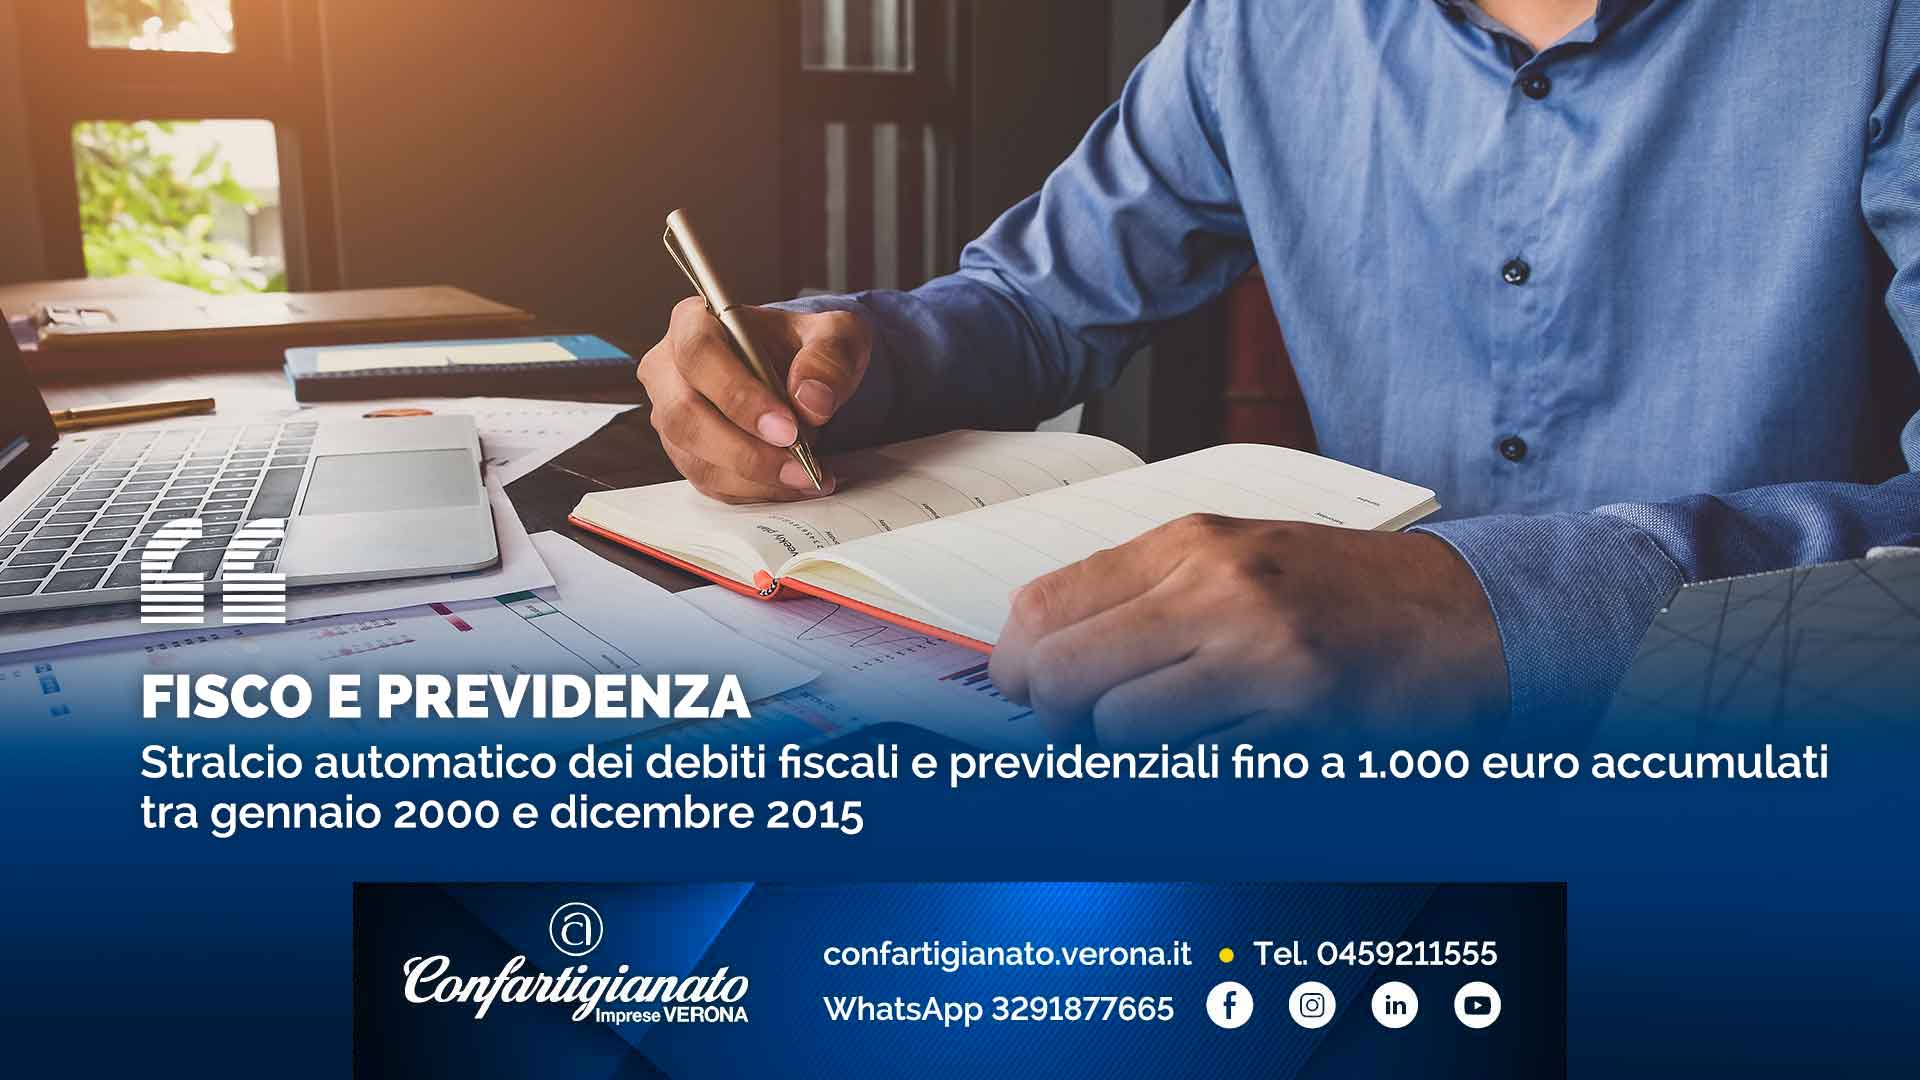 FISCO E PREVIDENZA – Stralcio automatico dei debiti fiscali e previdenziali fino a 1.000 euro accumulati tra gennaio 2000 e dicembre 2015